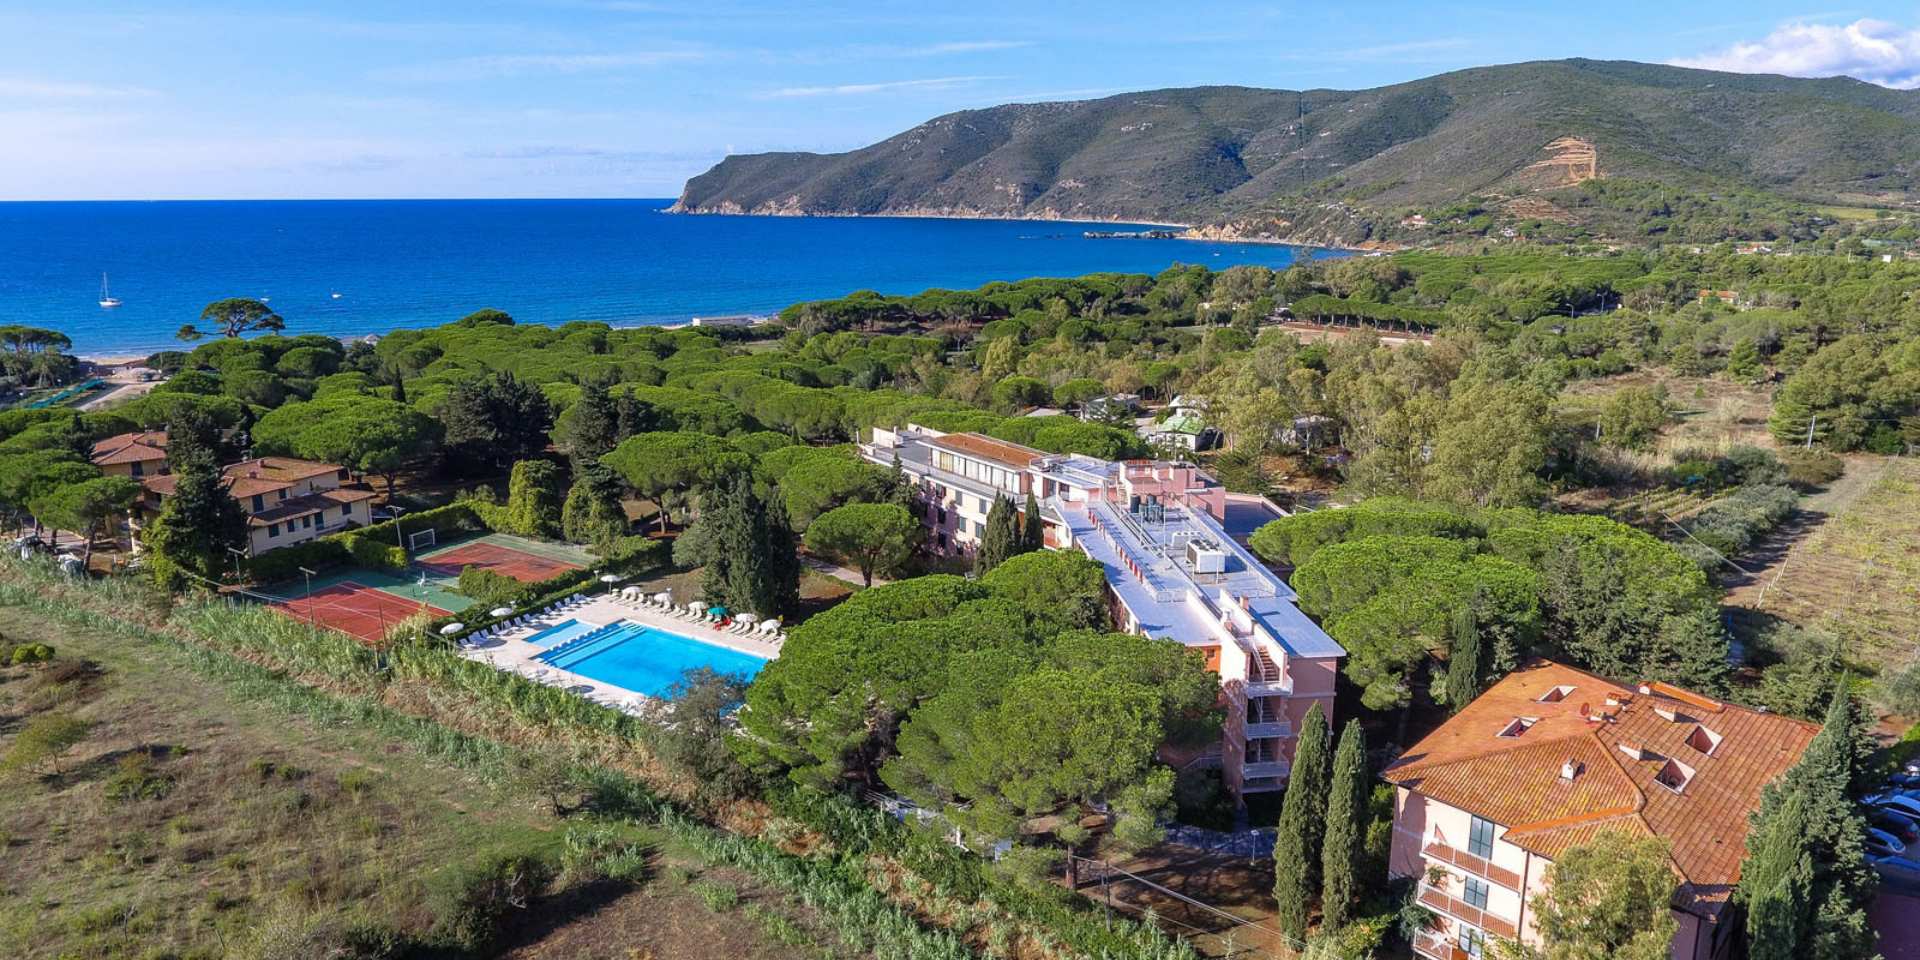 Hotel Club Lacona Isola d'Elba